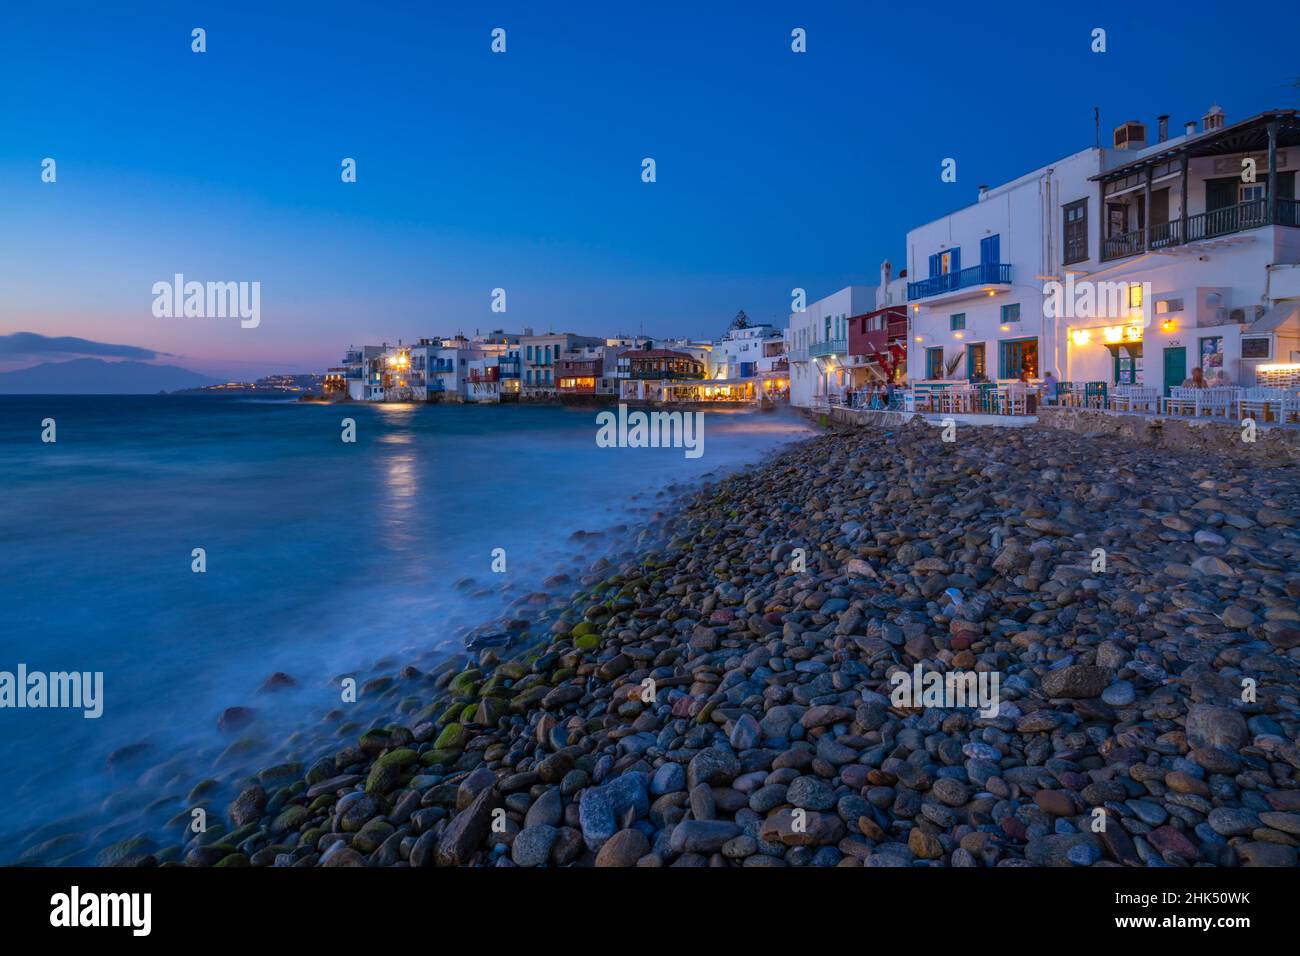 Vue sur les restaurants et la plage de galets de Little Venice dans la ville de Mykonos la nuit, Mykonos, les îles Cyclades, les îles grecques, la mer Égée,Grèce, Europe Banque D'Images